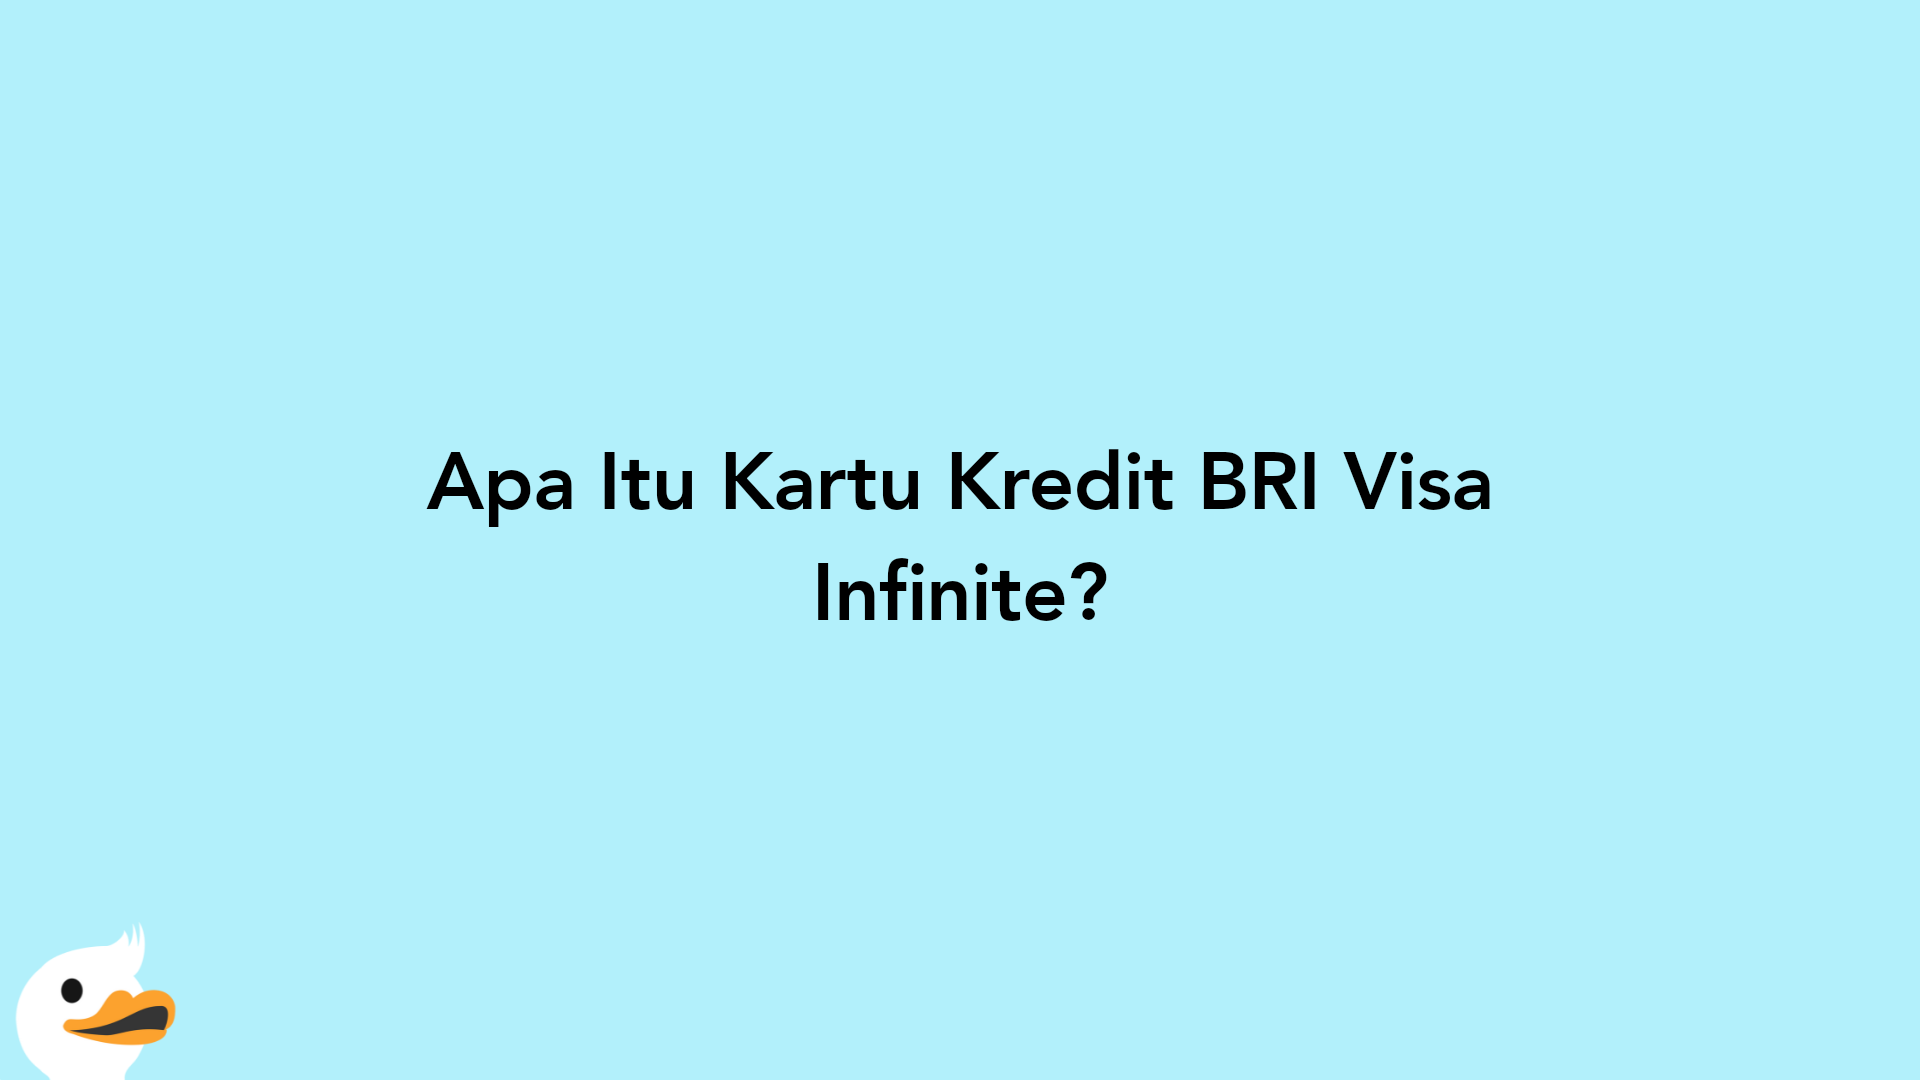 Apa Itu Kartu Kredit BRI Visa Infinite?